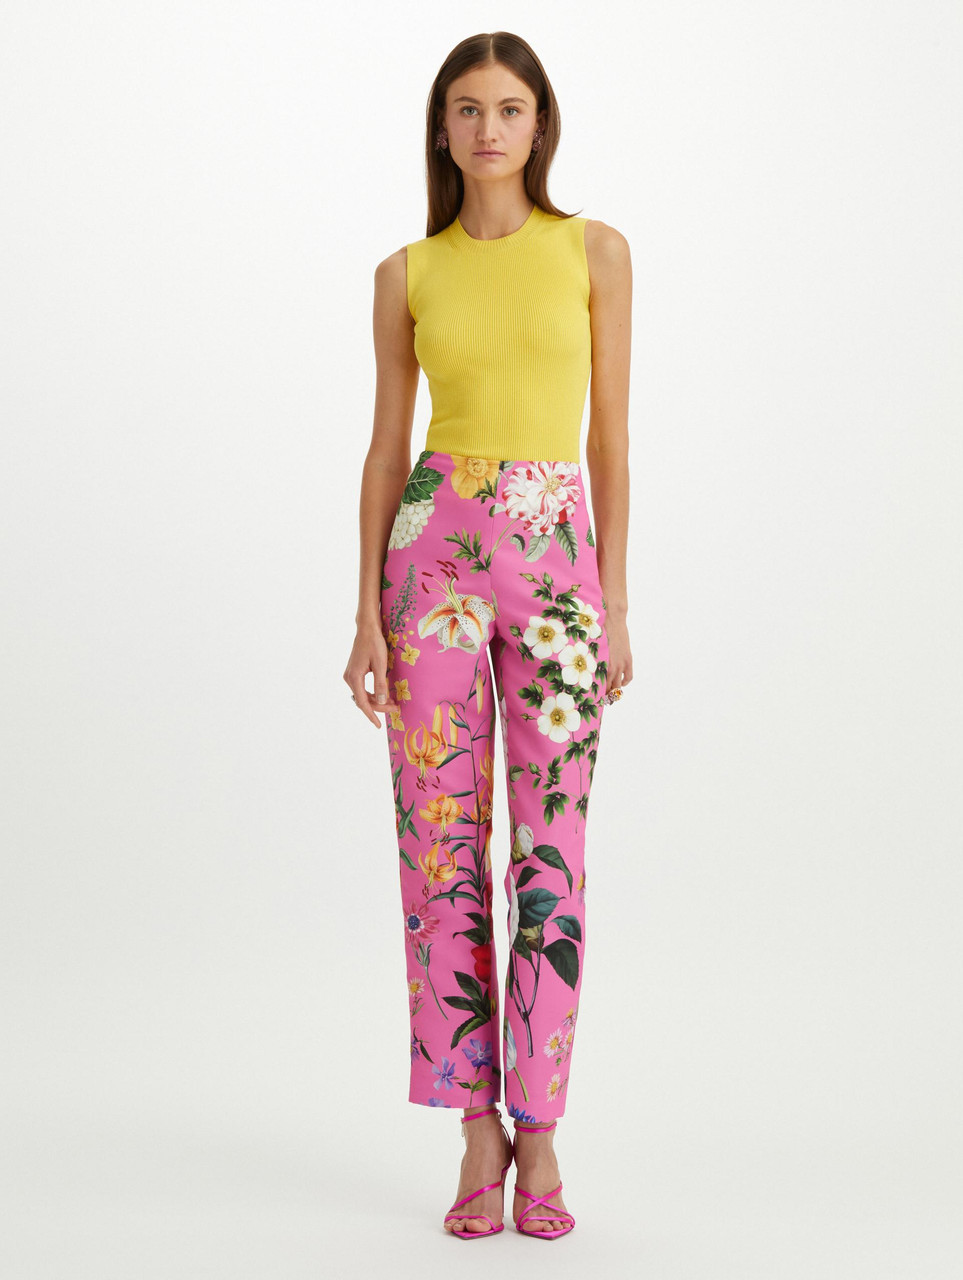 Oscar de la Renta Multicolor Floral Pants in Lilac Multi, Size 6